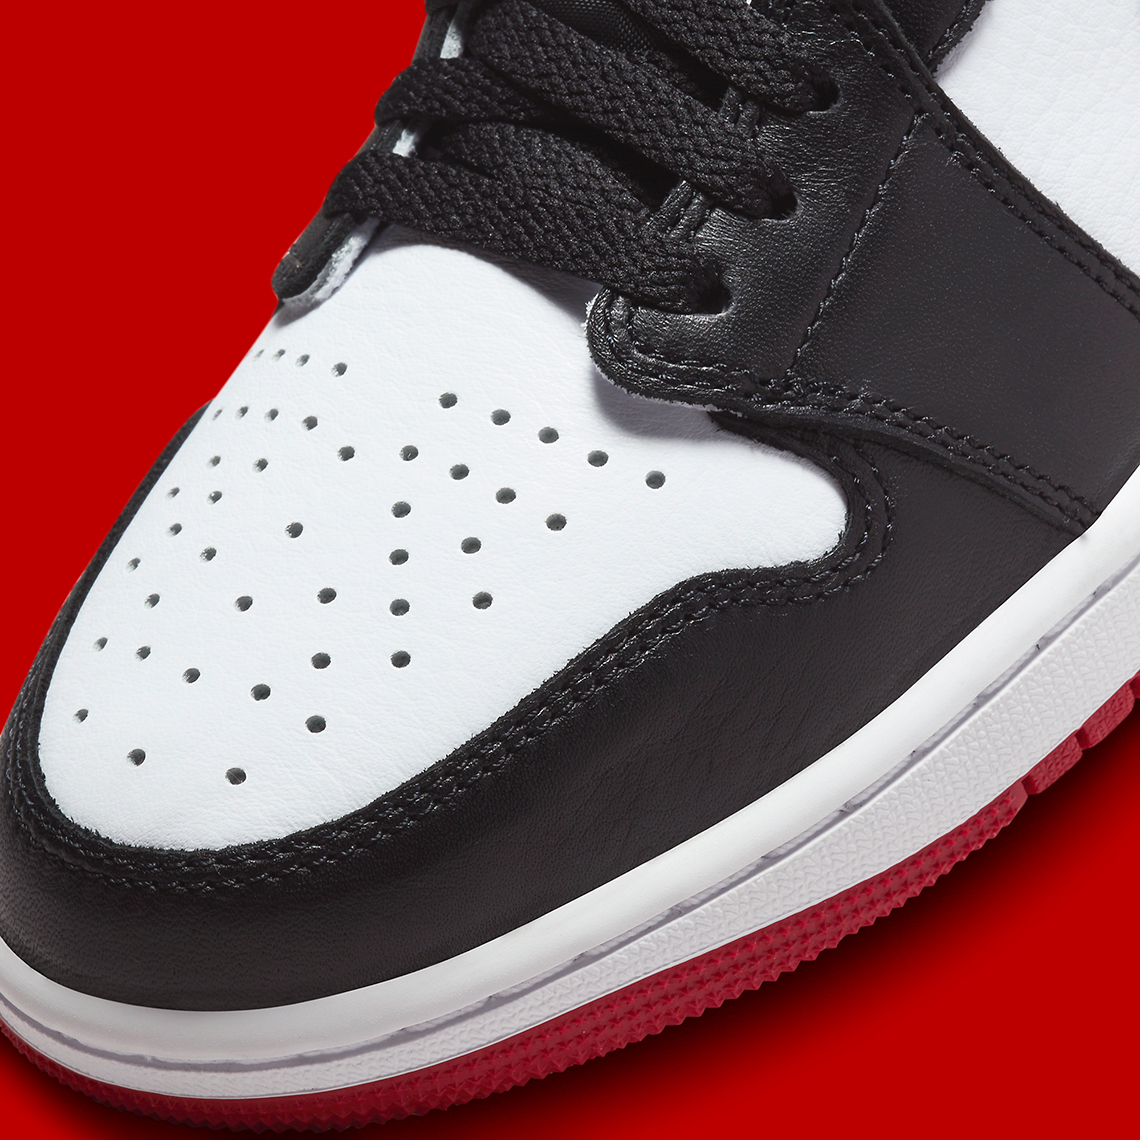 Air Jordan 1 Low OG White Black Varsity Red CZ0790-106 | SneakerNews.com